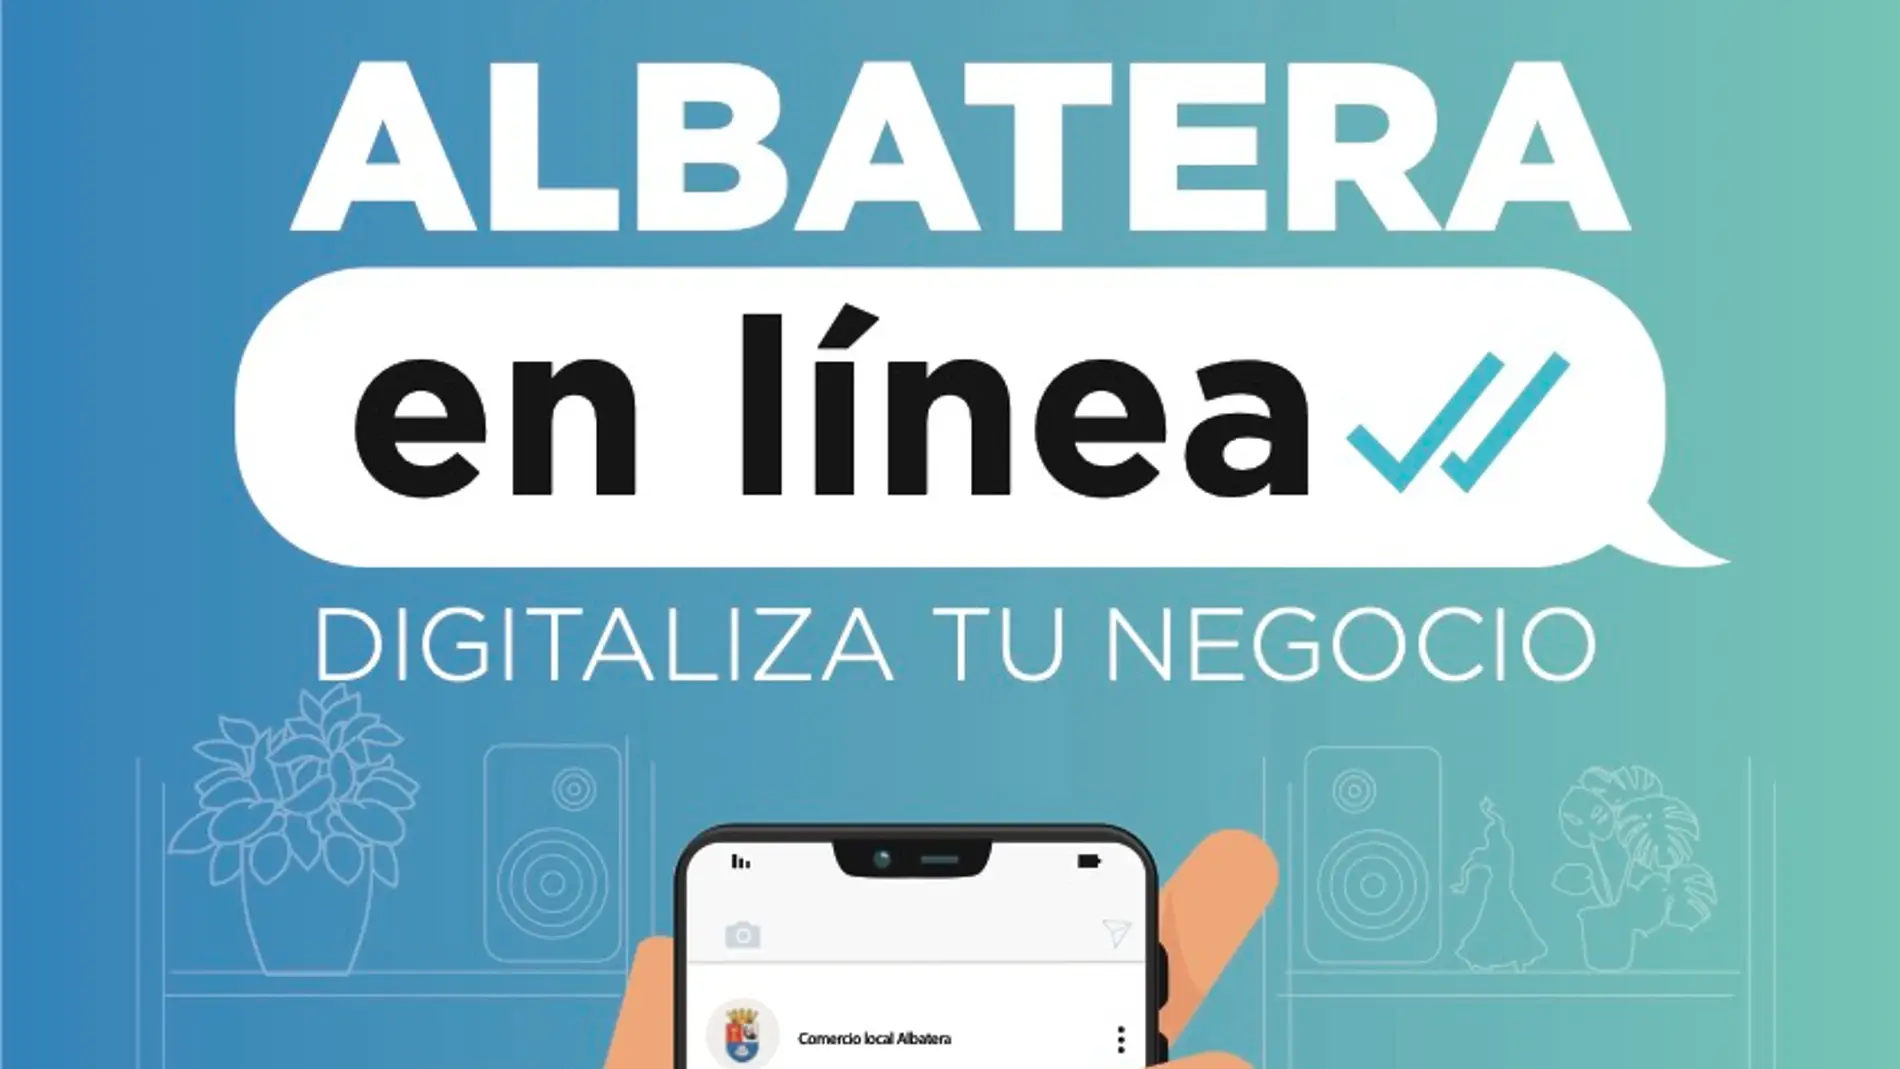 Comercio presenta la campaña “Albatera en línea” para impulsar la digitalización de los comercios del municipio  